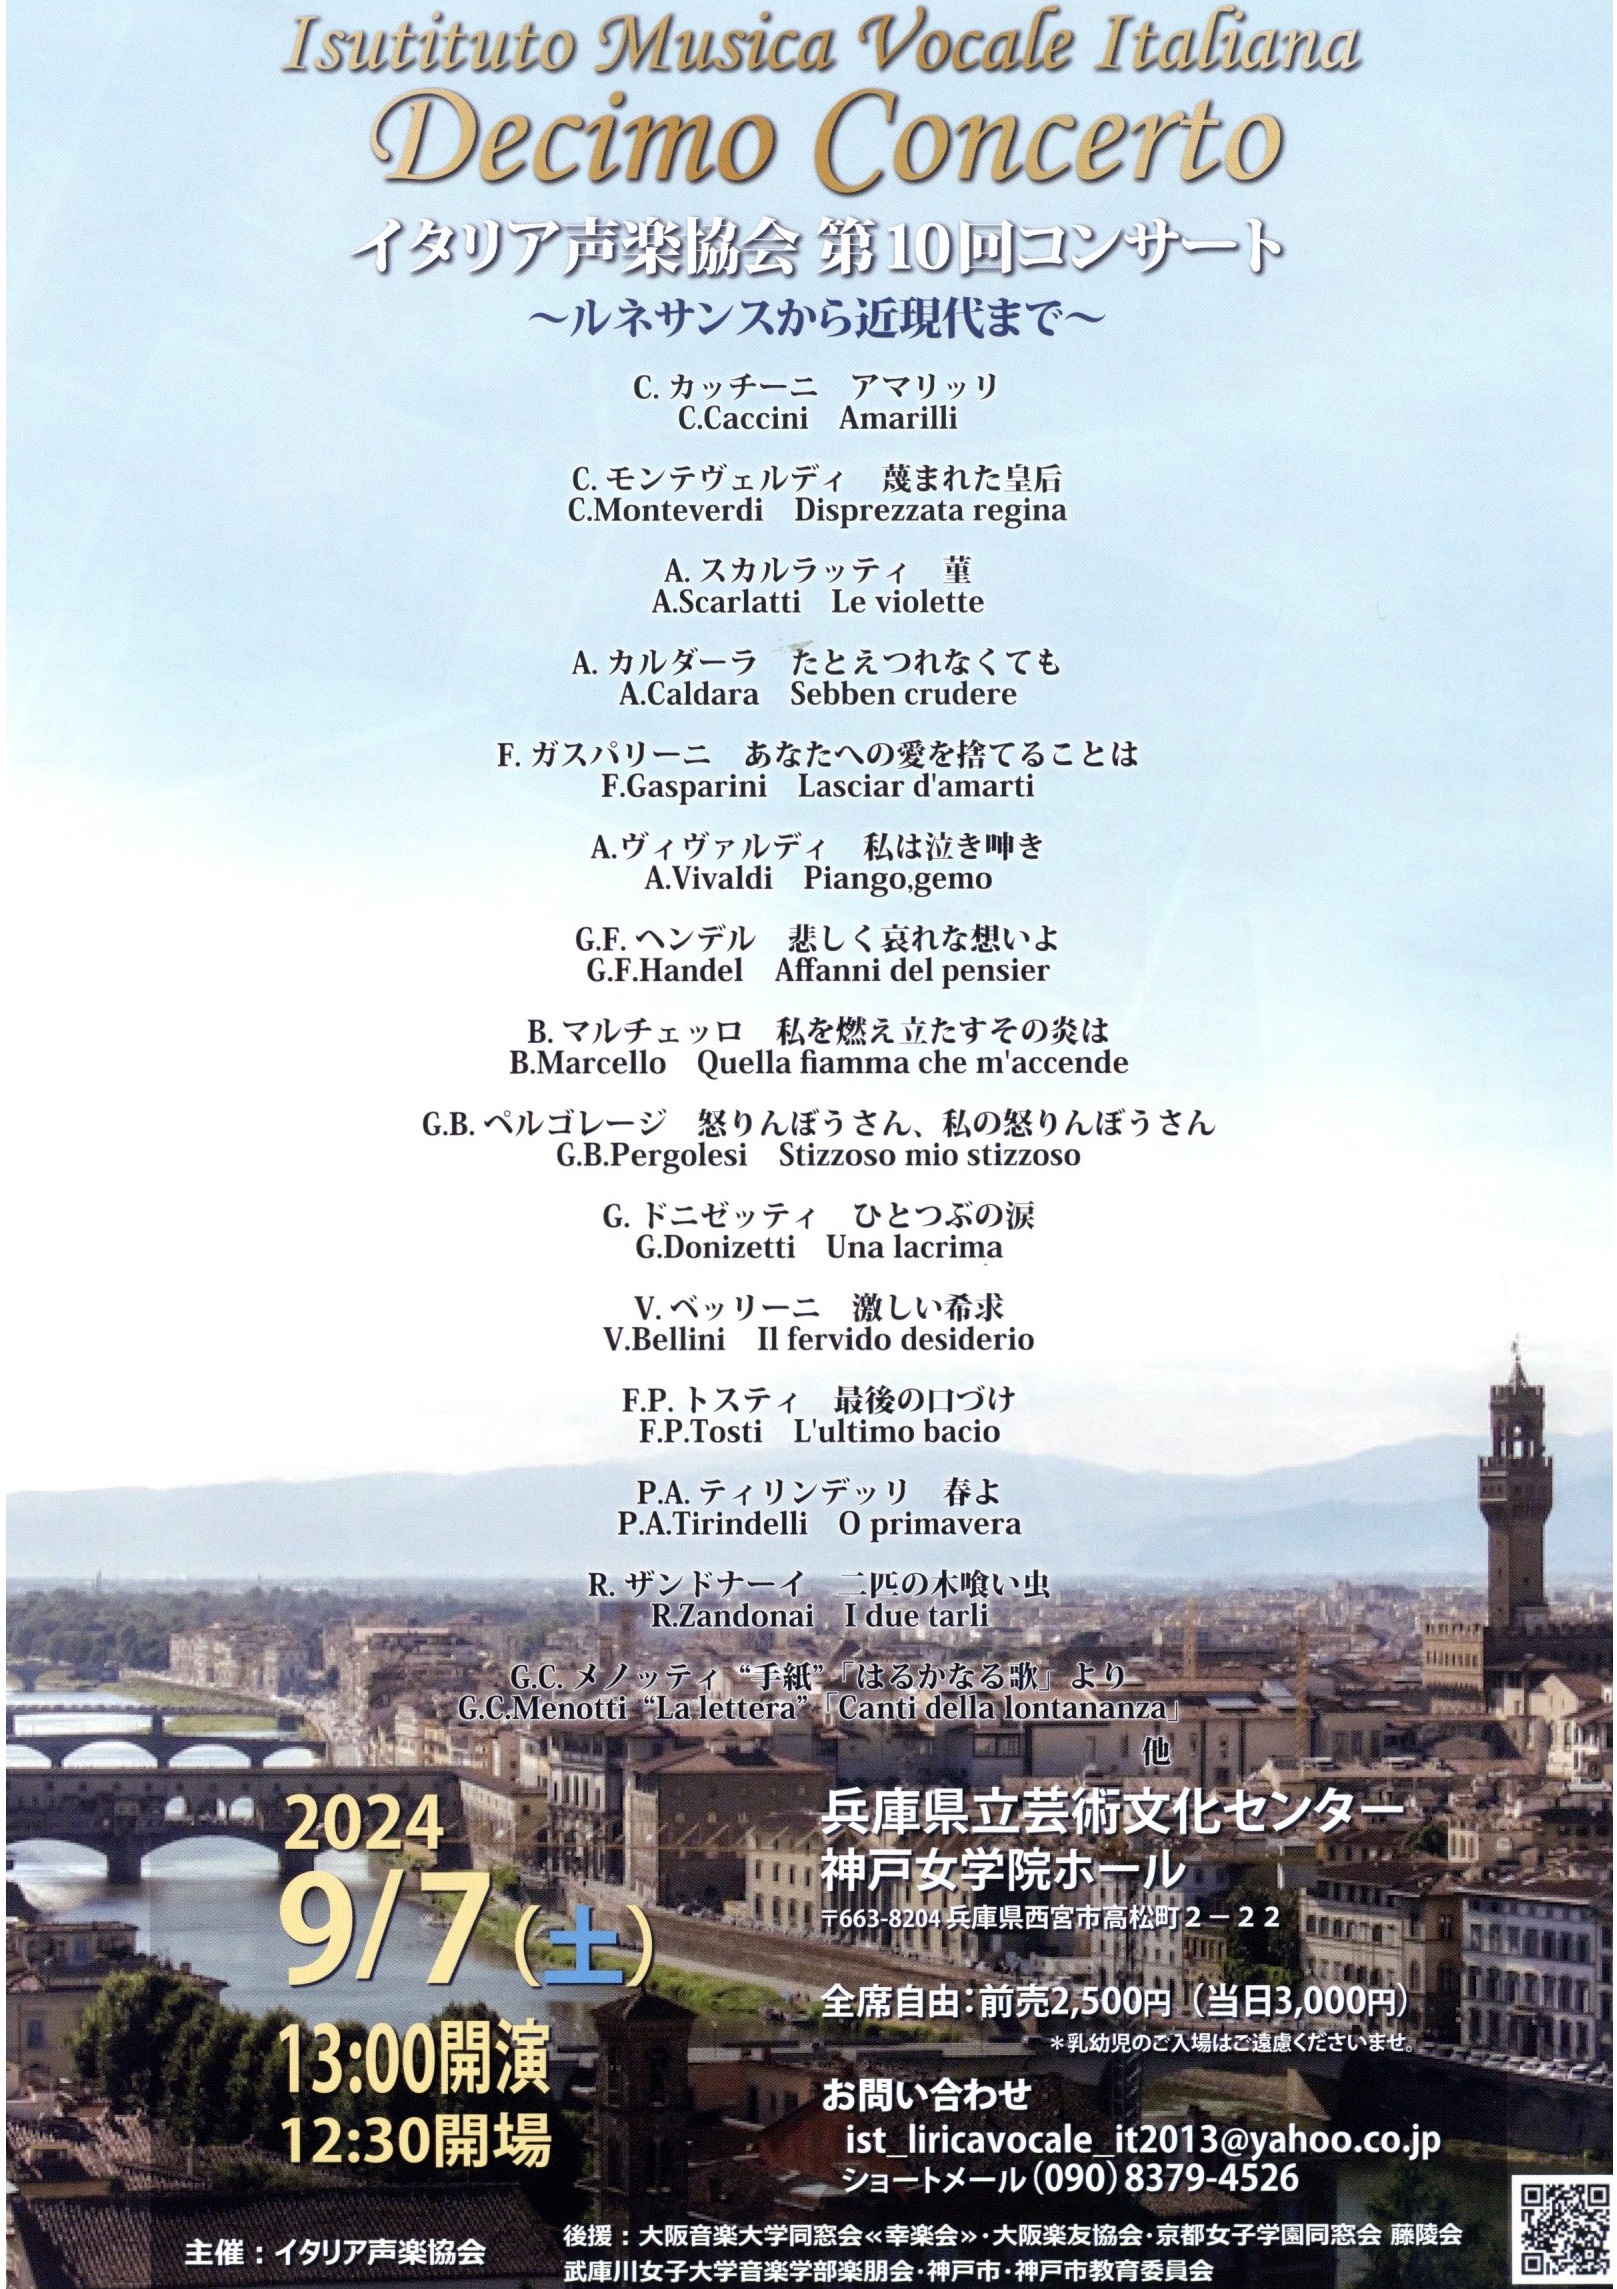 イタリア声楽協会第10回コンサート ルネサンスから近現代まで